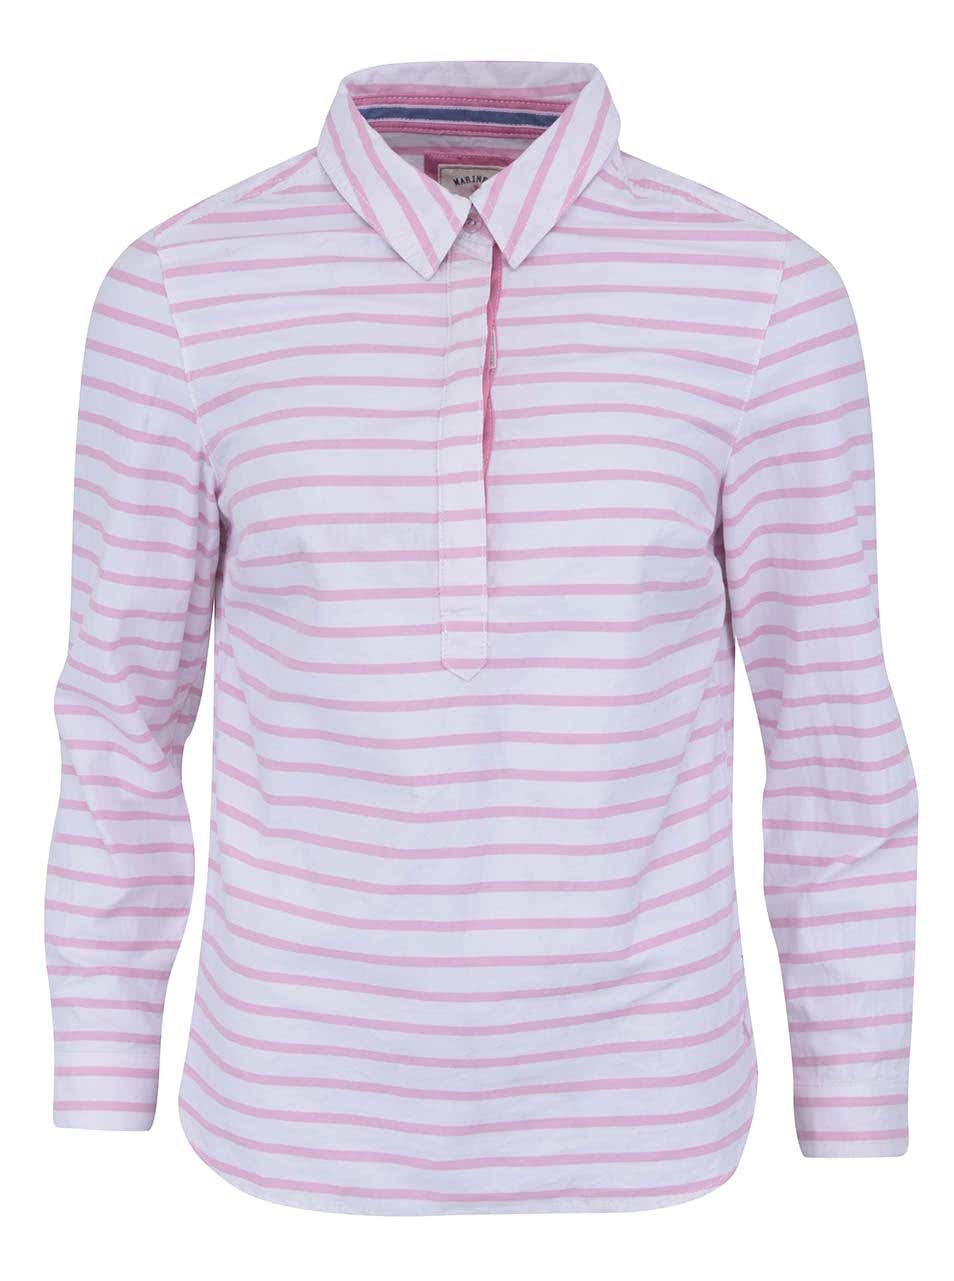 Bílo-růžová pruhovaná košile Tom Joule Clovelly